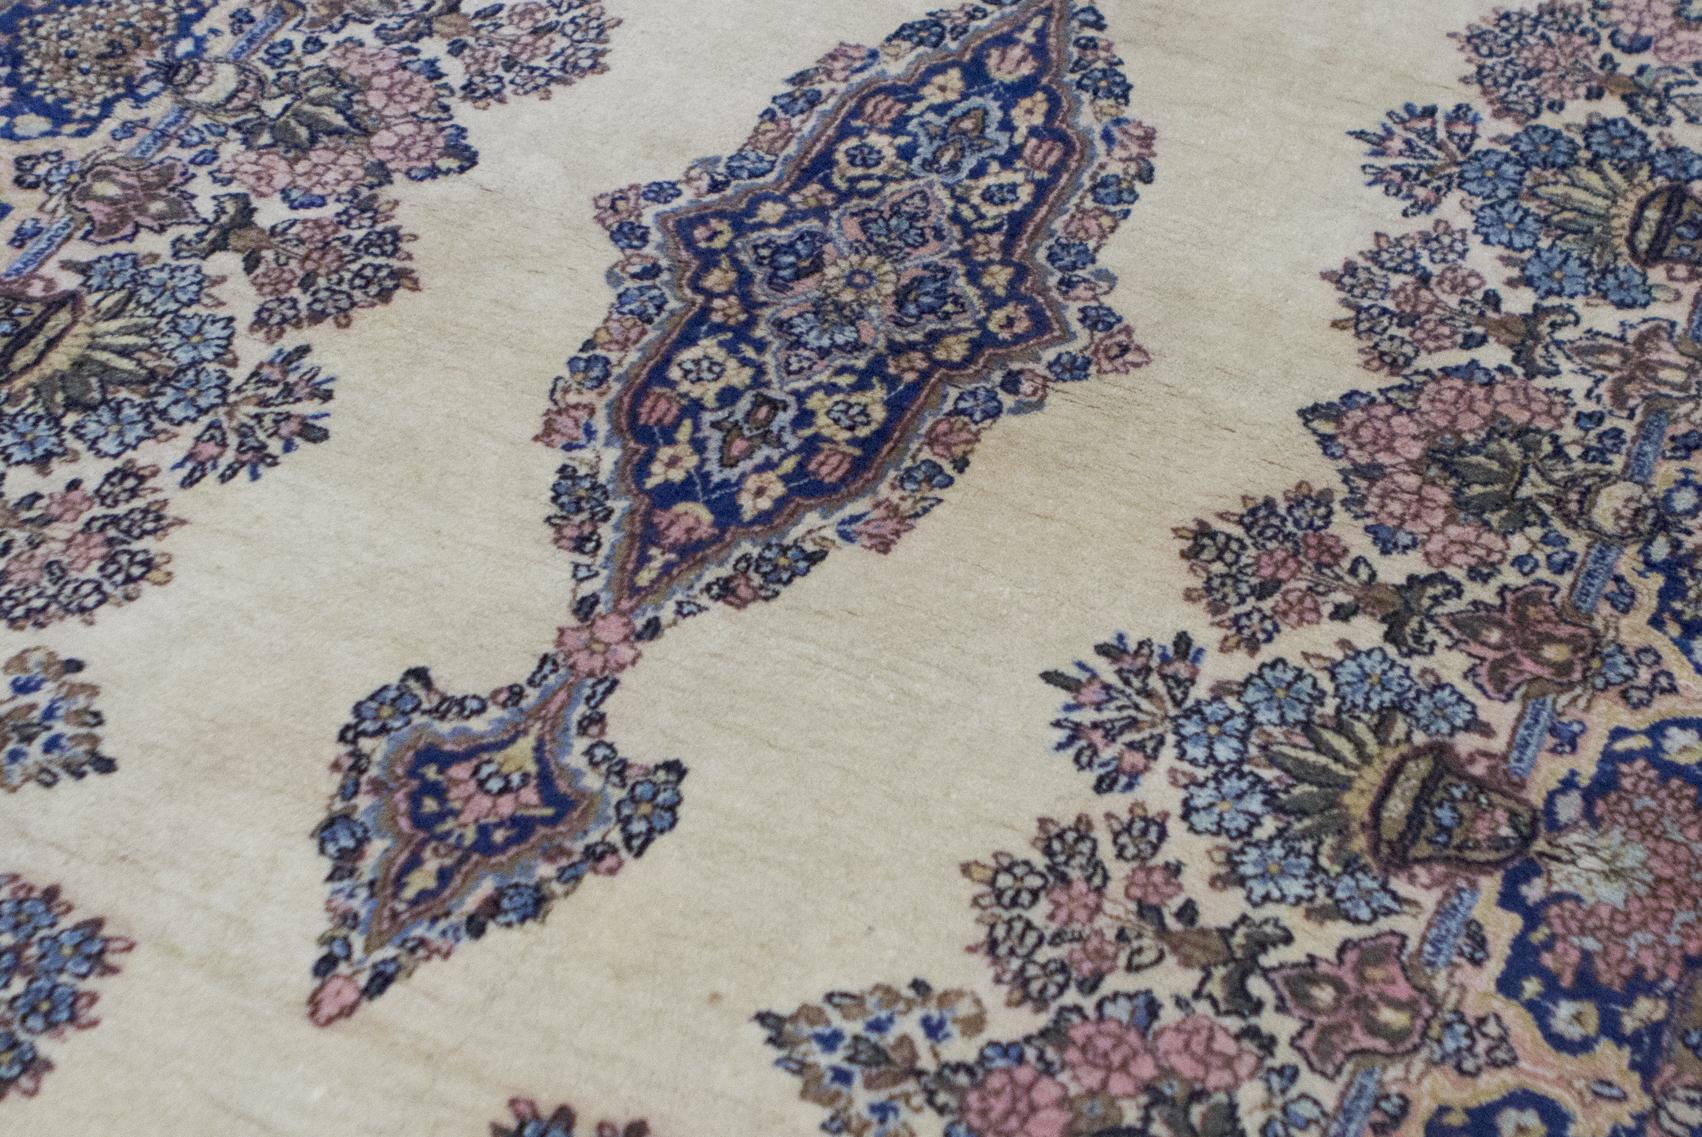 Alter persischer Kerman-Teppich, um 1940. Trotz seiner geringen Größe weist dieser alte Kerman-Teppich eine enorme Detailfülle in der Komposition mit den floralen Elementen auf, die sich im Medaillon und in den umgebenden Bordüren wiederholen, wobei